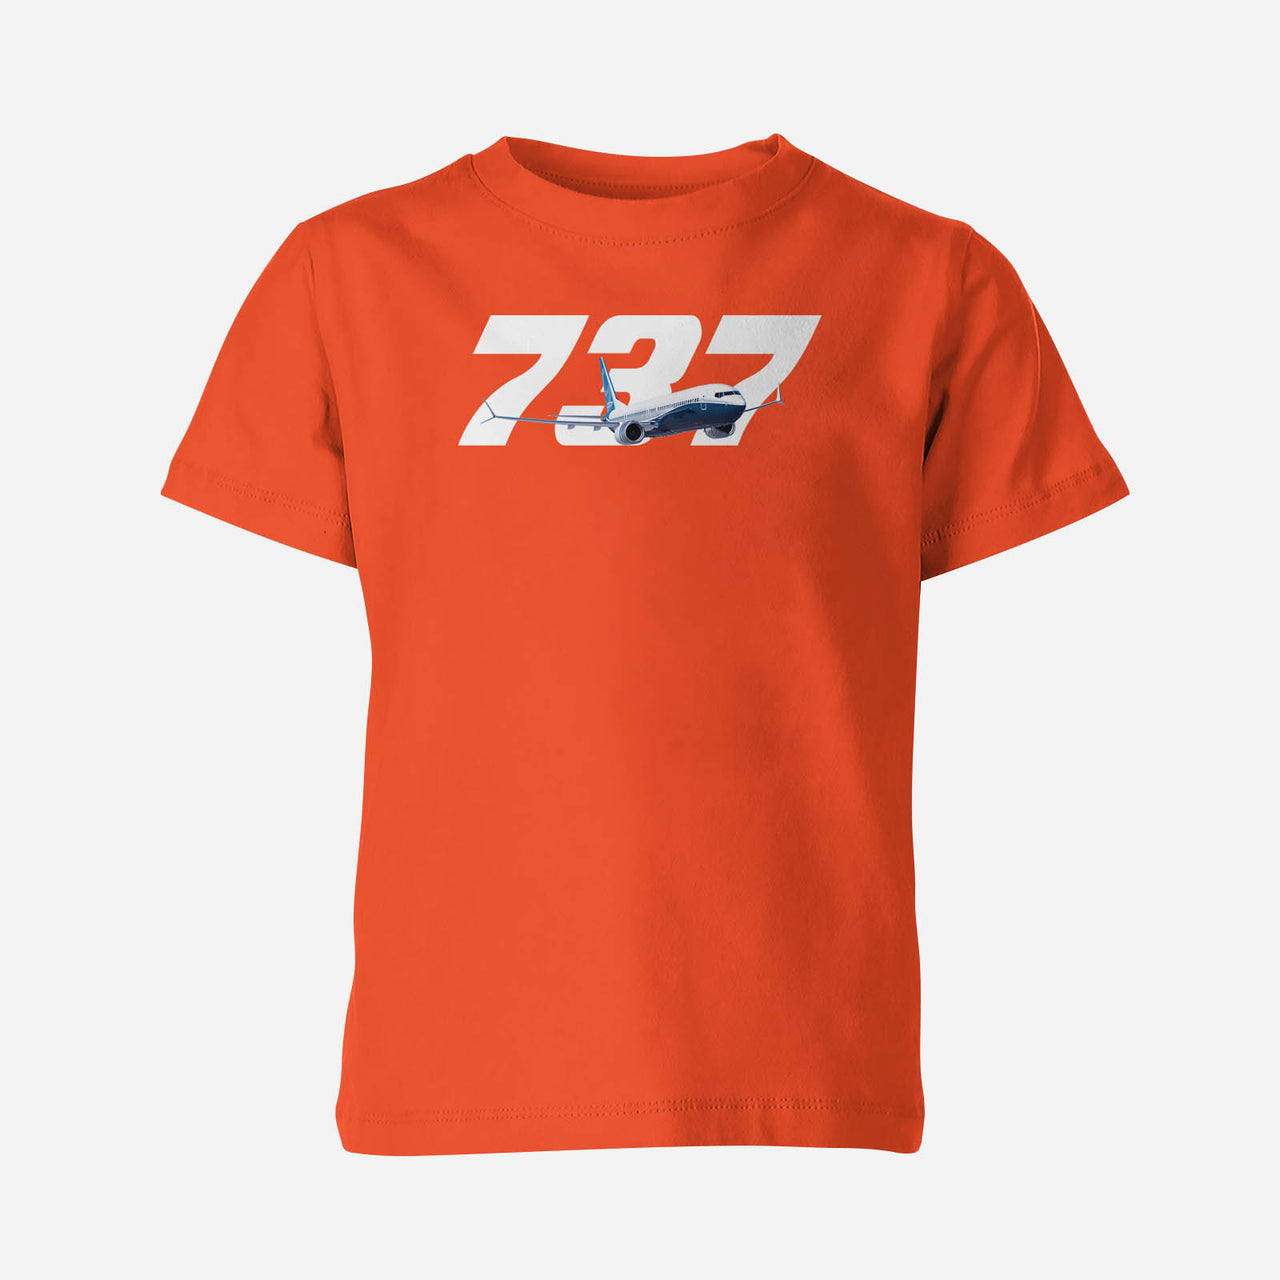 Super Boeing 737 Designed Children T-Shirts